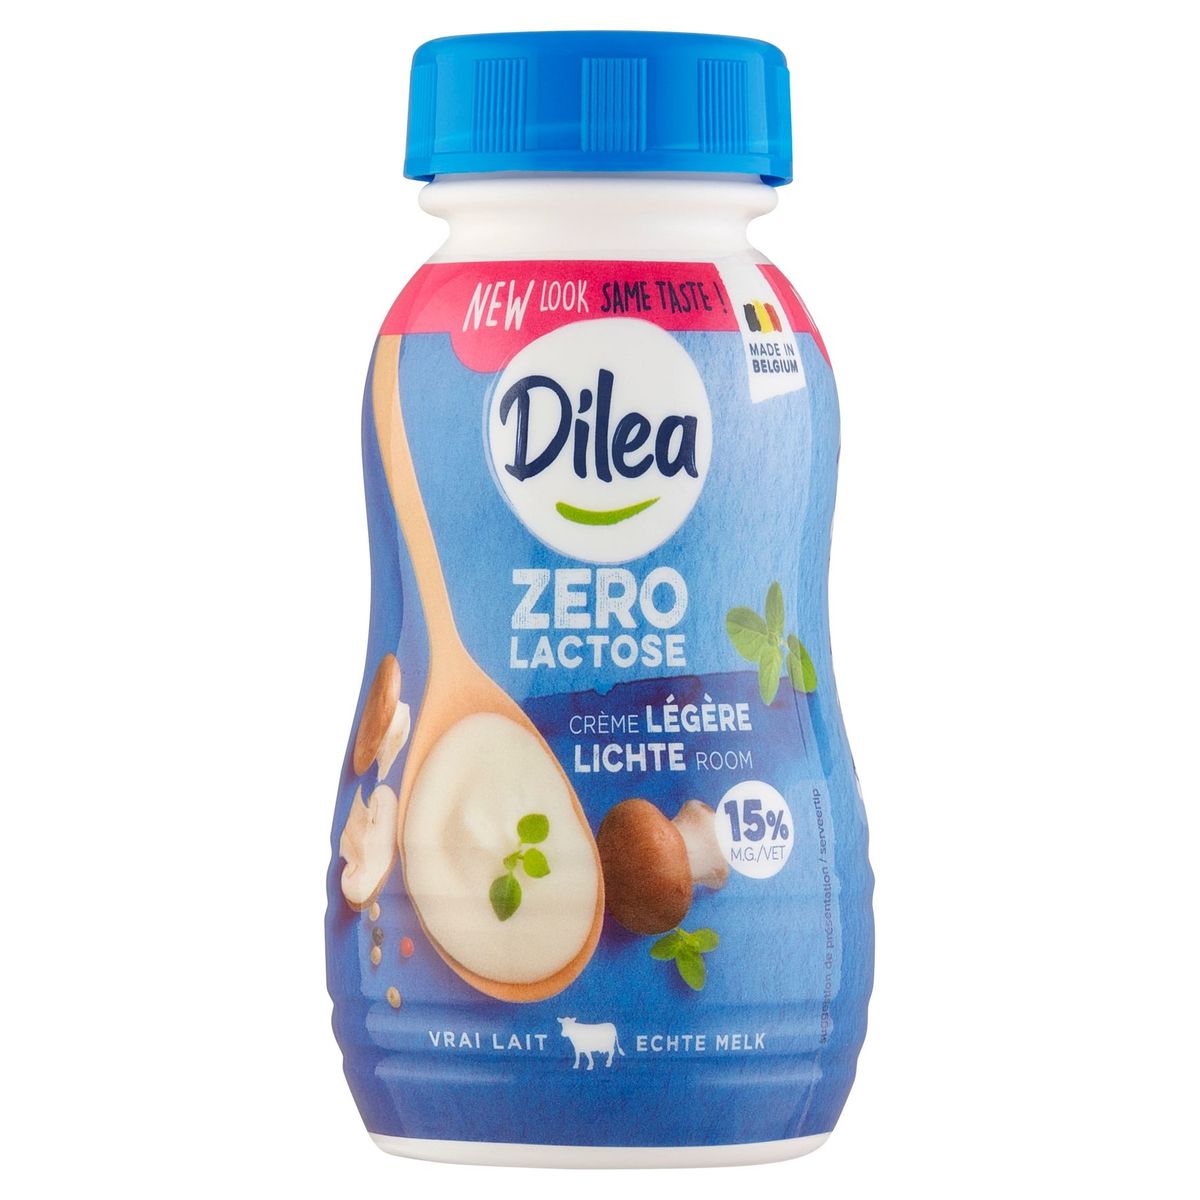 Dilea Zero Lactose Licht Room 20 cl